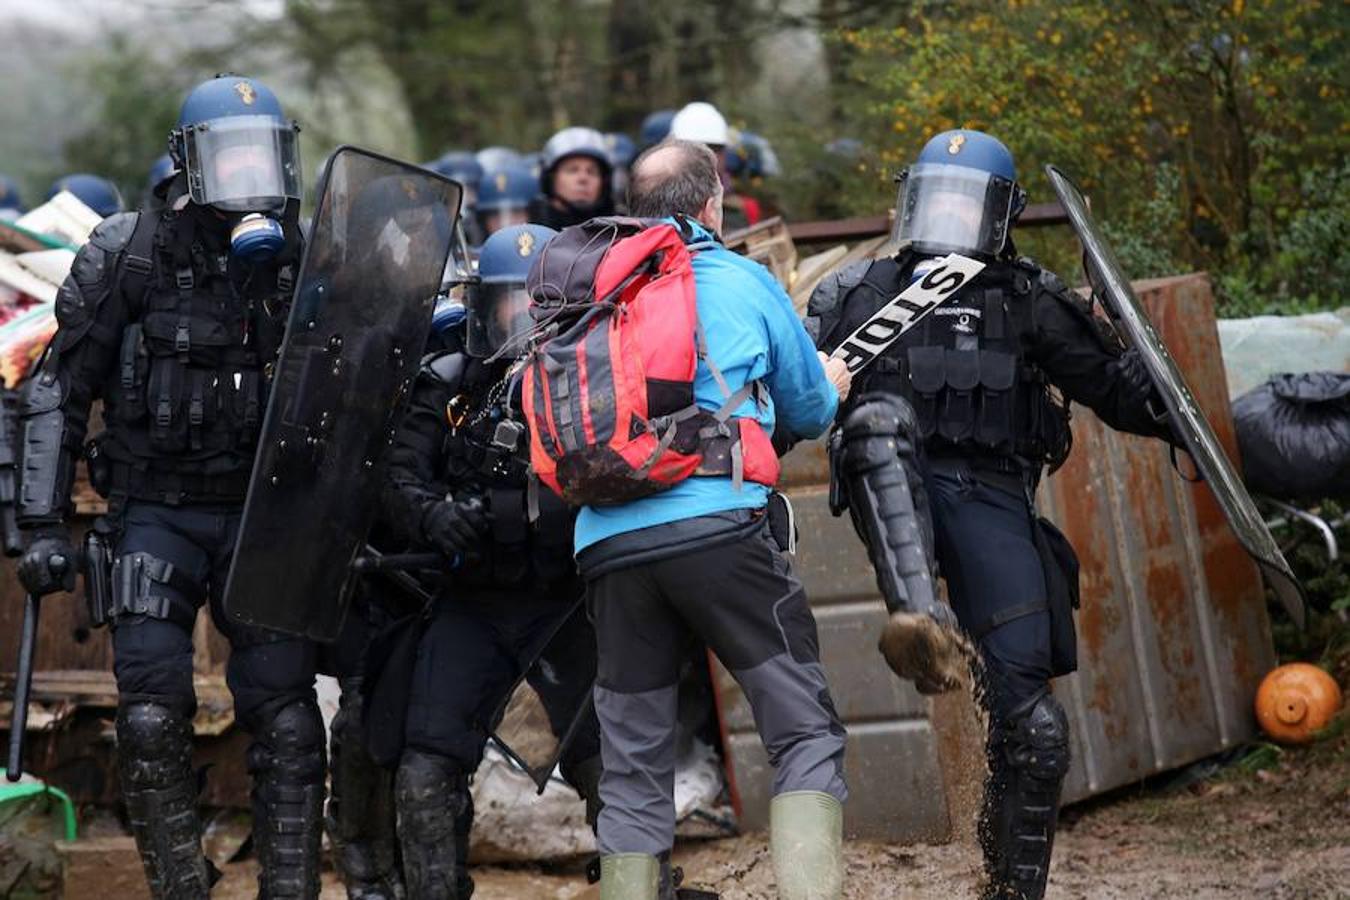 Los enfrentamientos entre Policía y manifestantes en Nantes, en imágenes. 